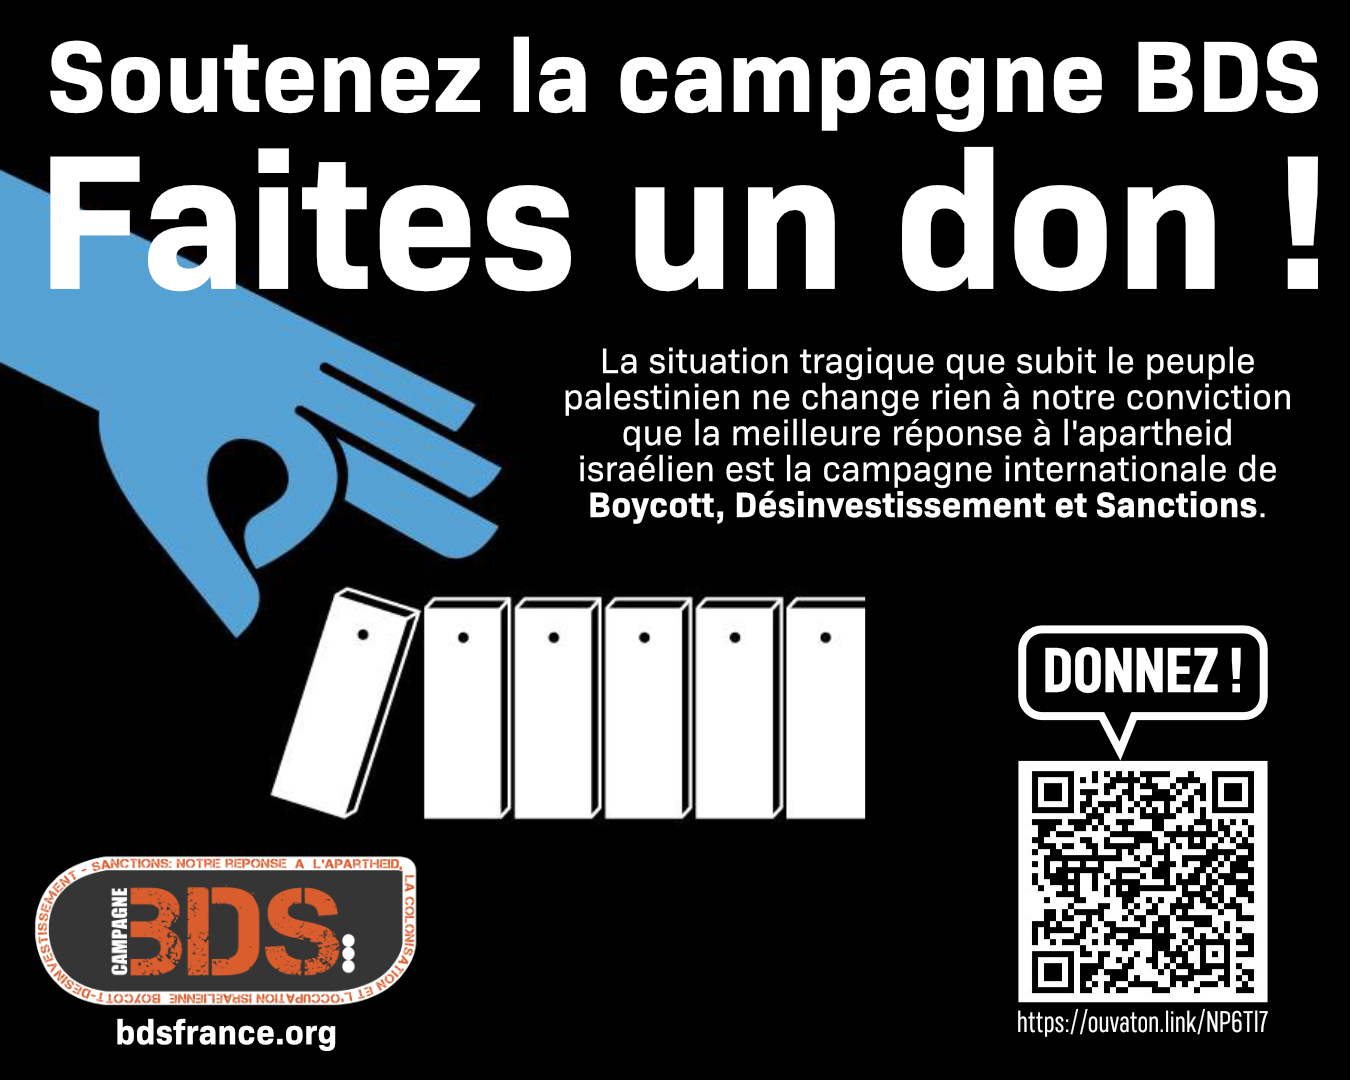 Soutenez BDS, faites un don